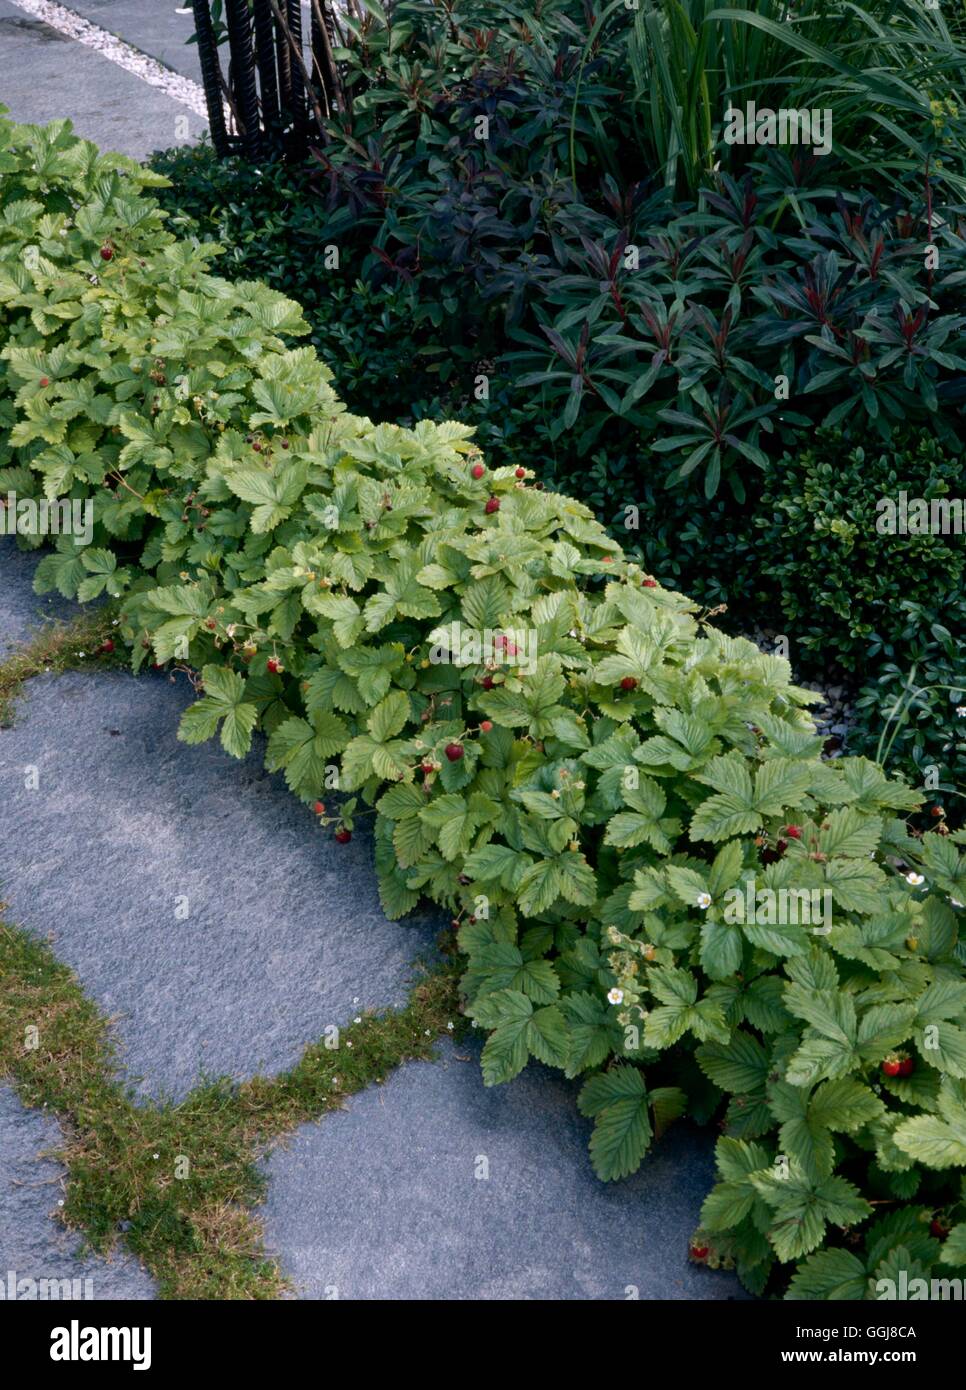 Las plantas - Cantos de Alpine fresas EDG105457 Foto de stock